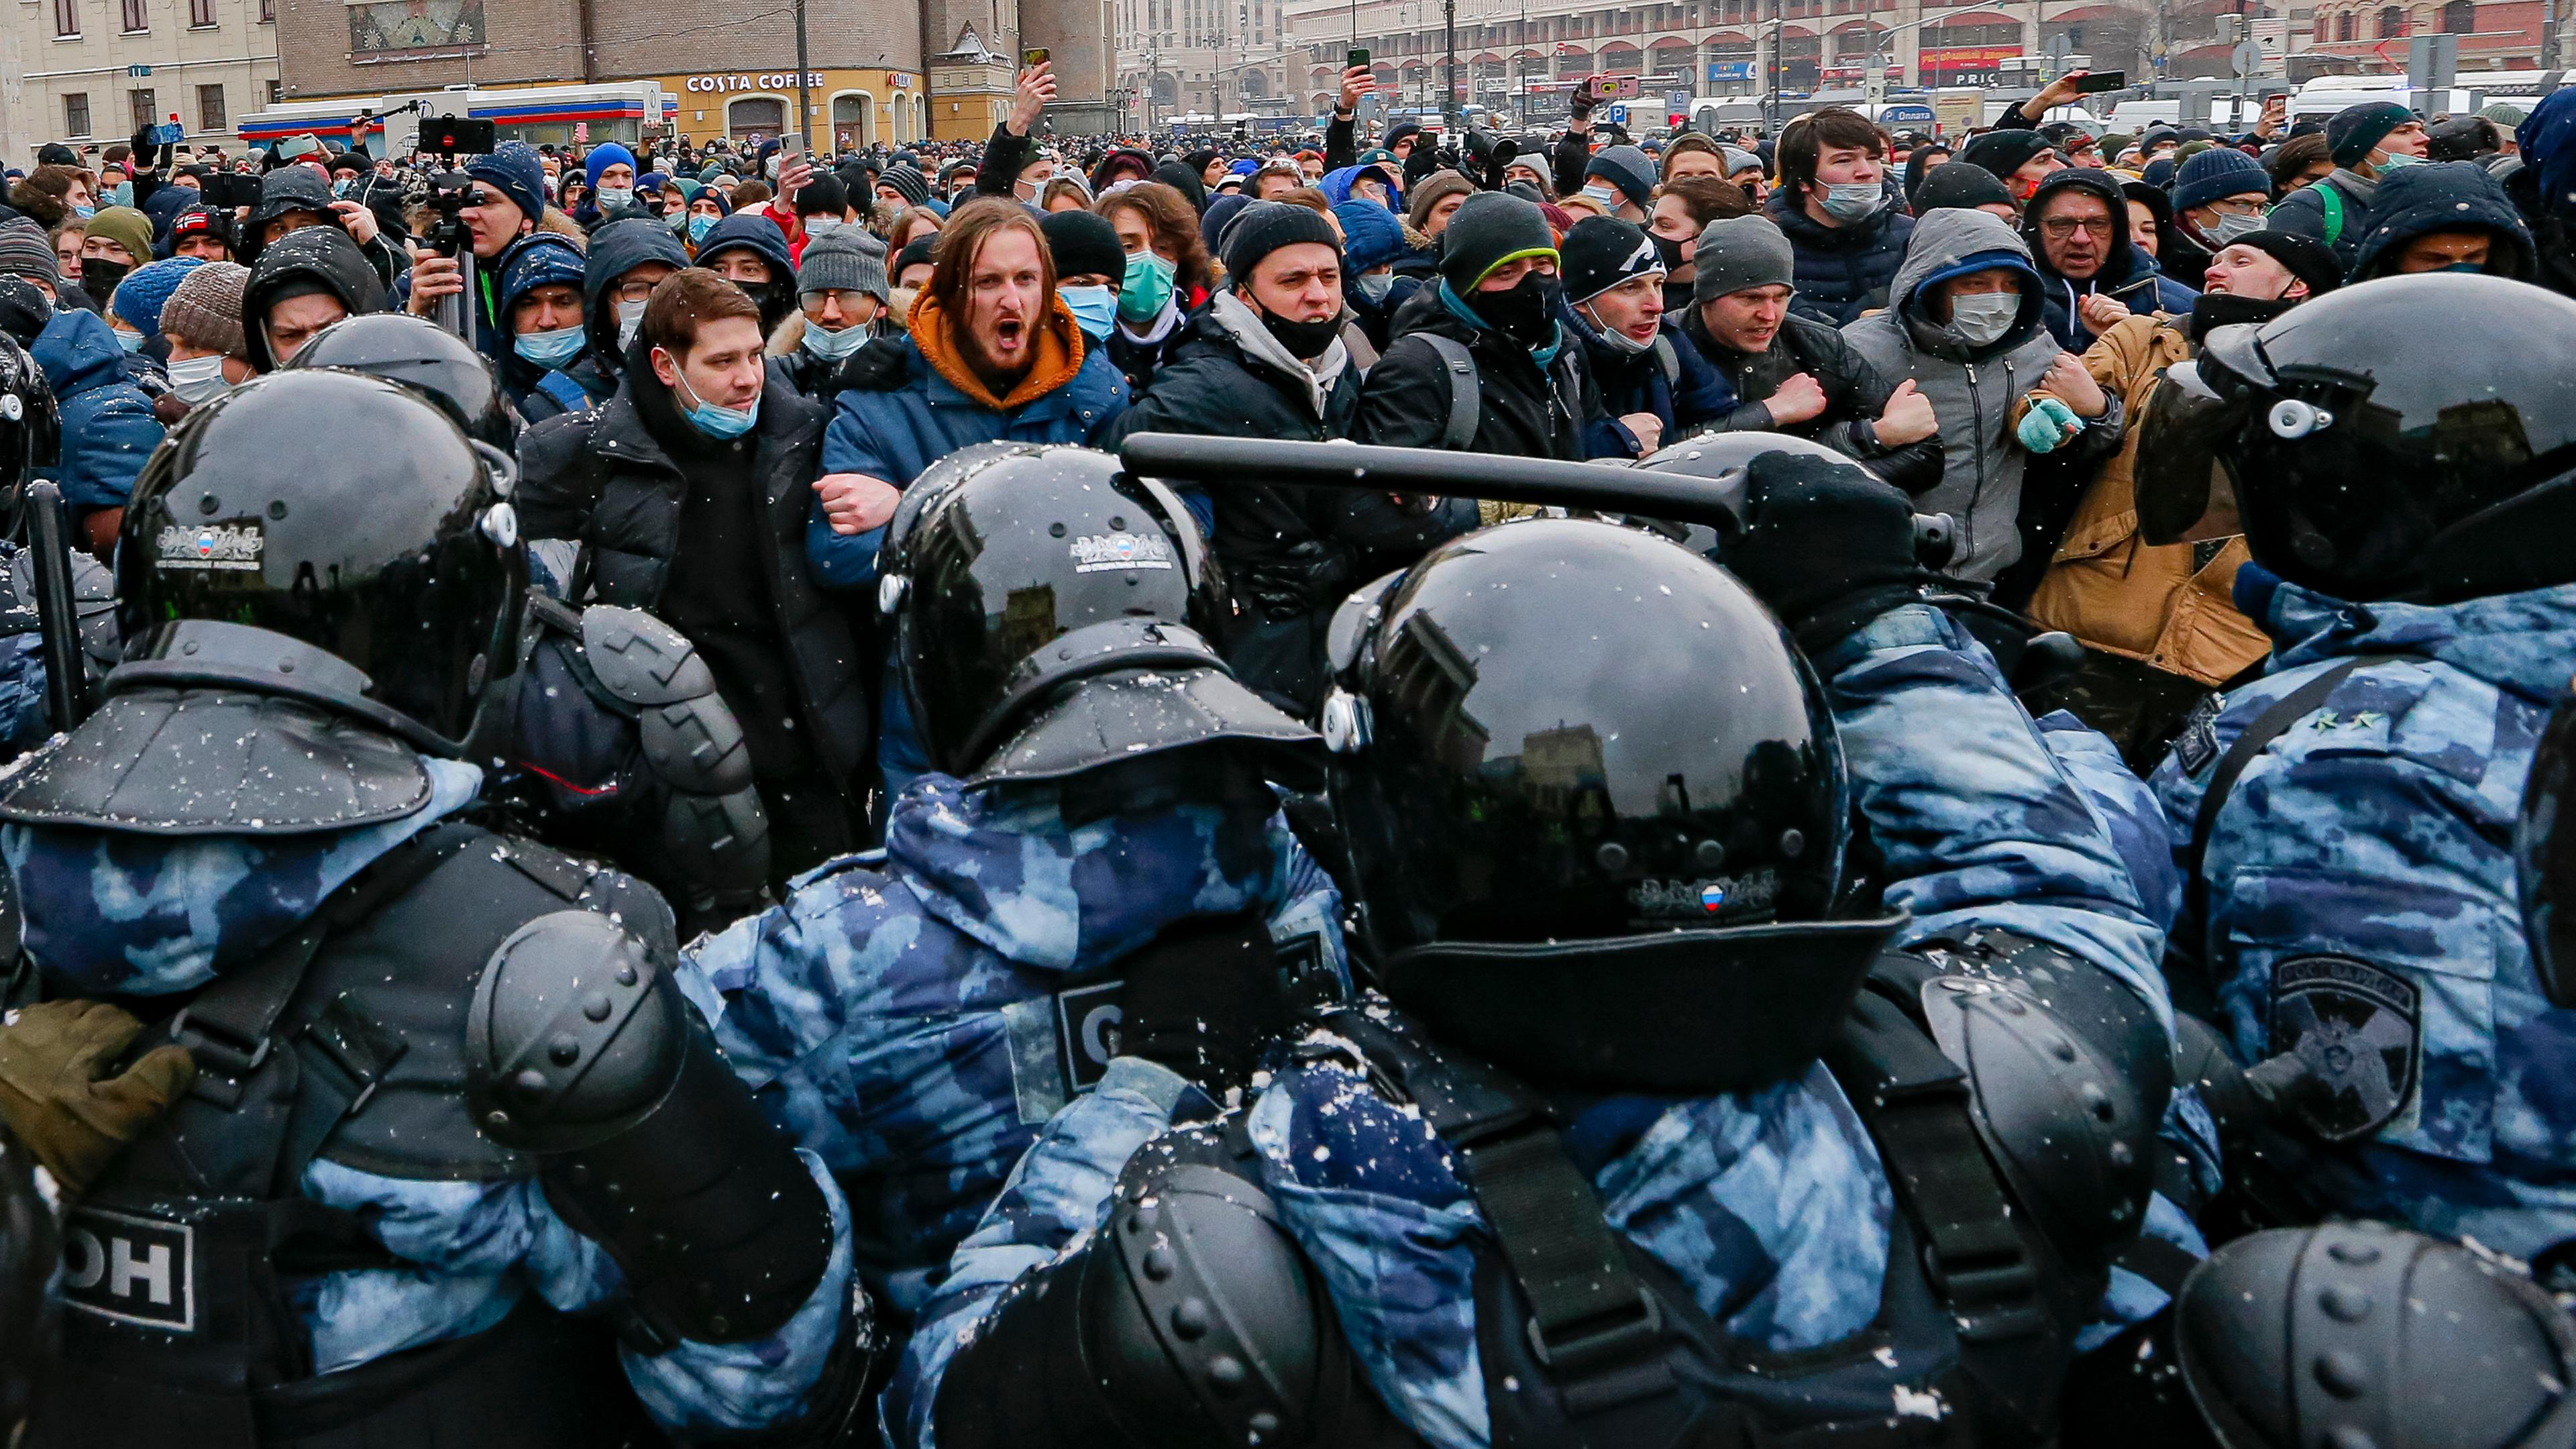 Polizisten in Schutzkleidung blockieren Demonstranten in Moskau den Weg bei einem Protest gegen die Inhaftierung des Kremlkritikers Nawalny.